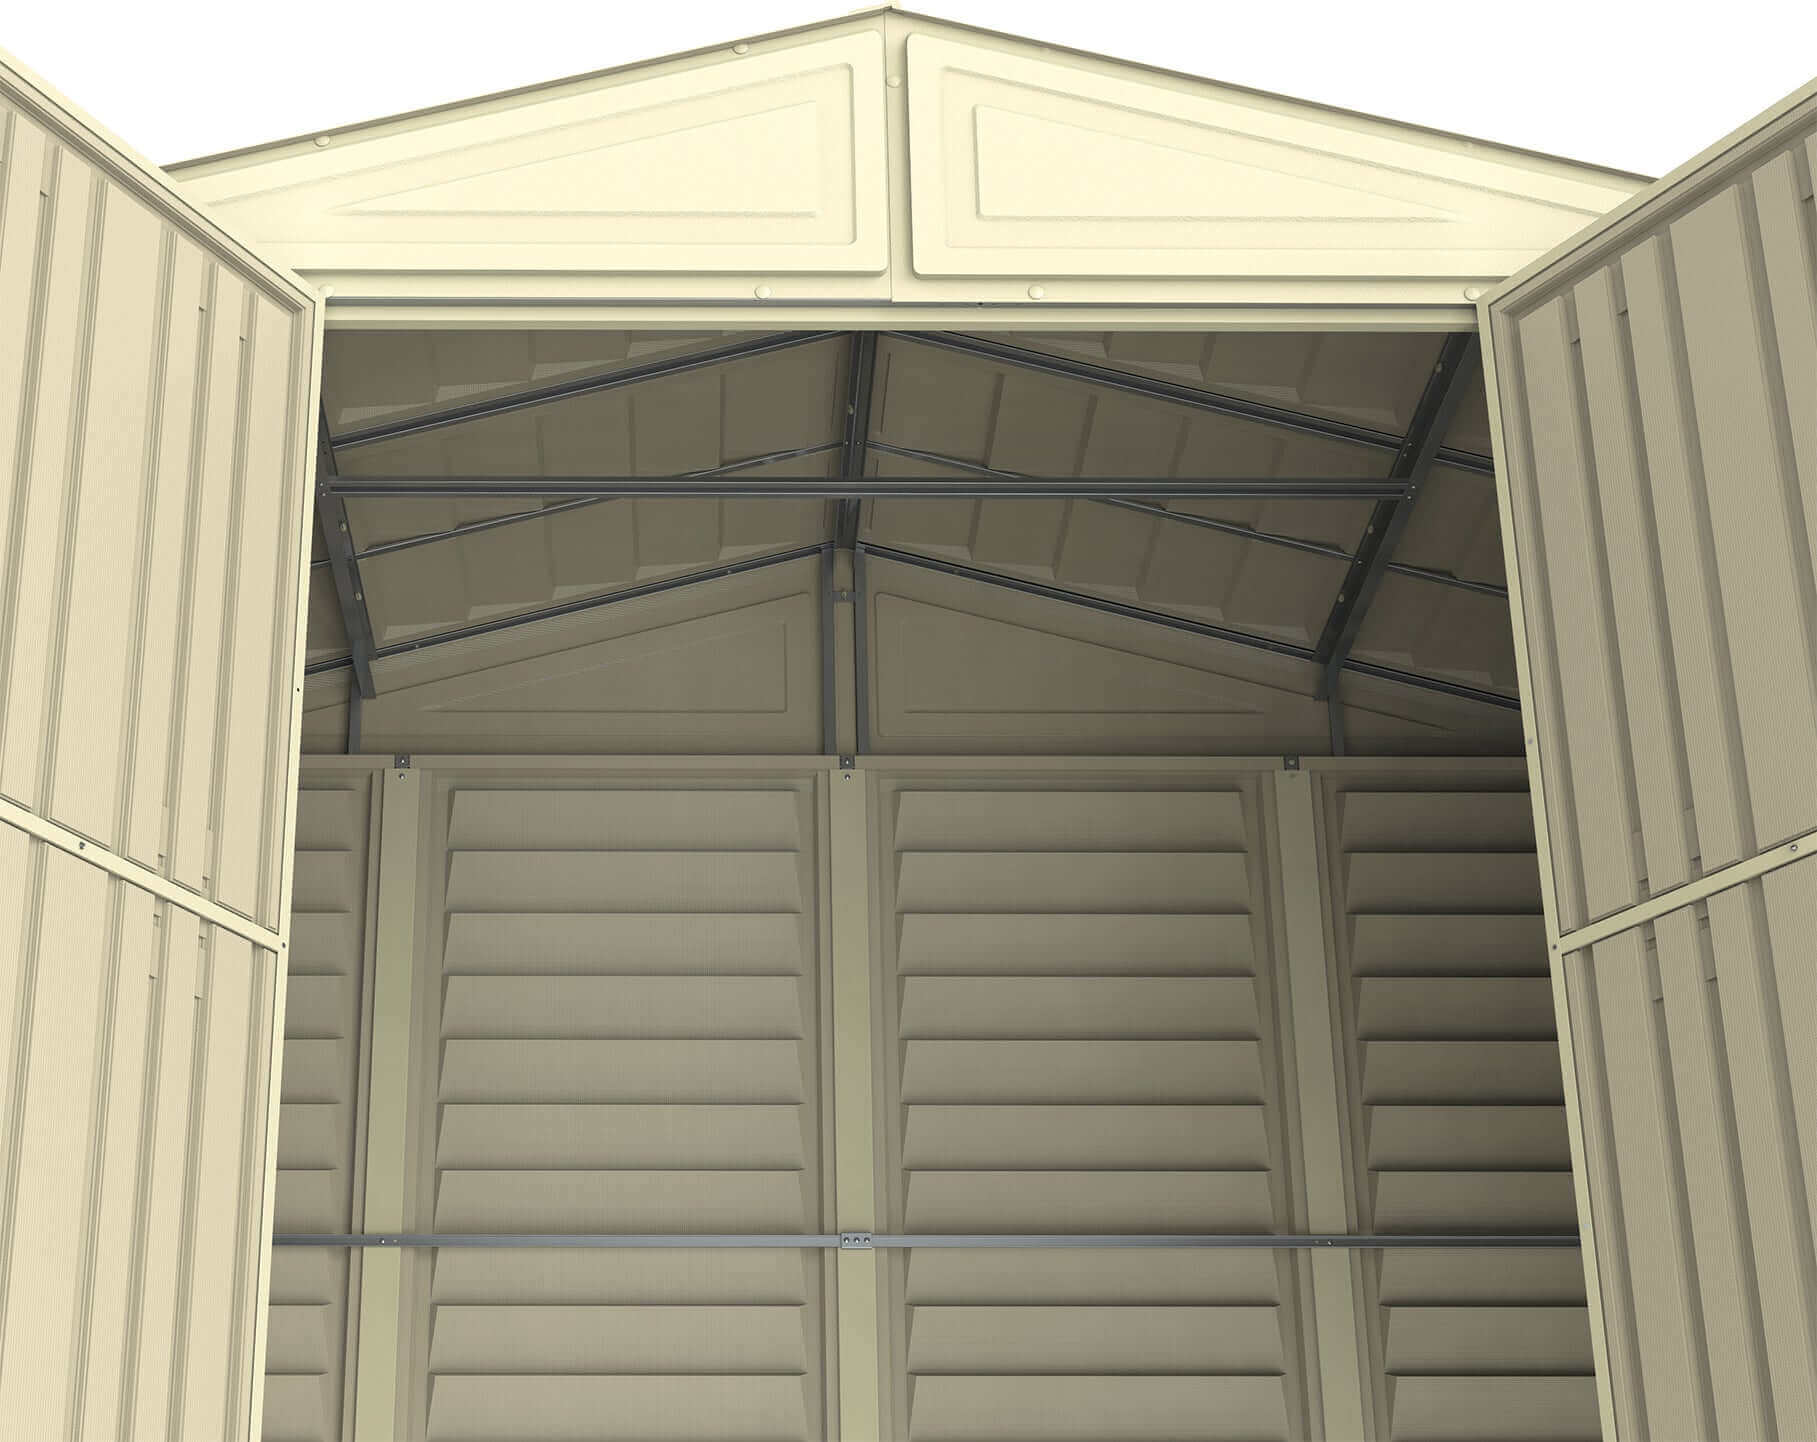 Duramax 10.5' x 5.0' Woodbridge with Foundation 00283 Front doors open looking up